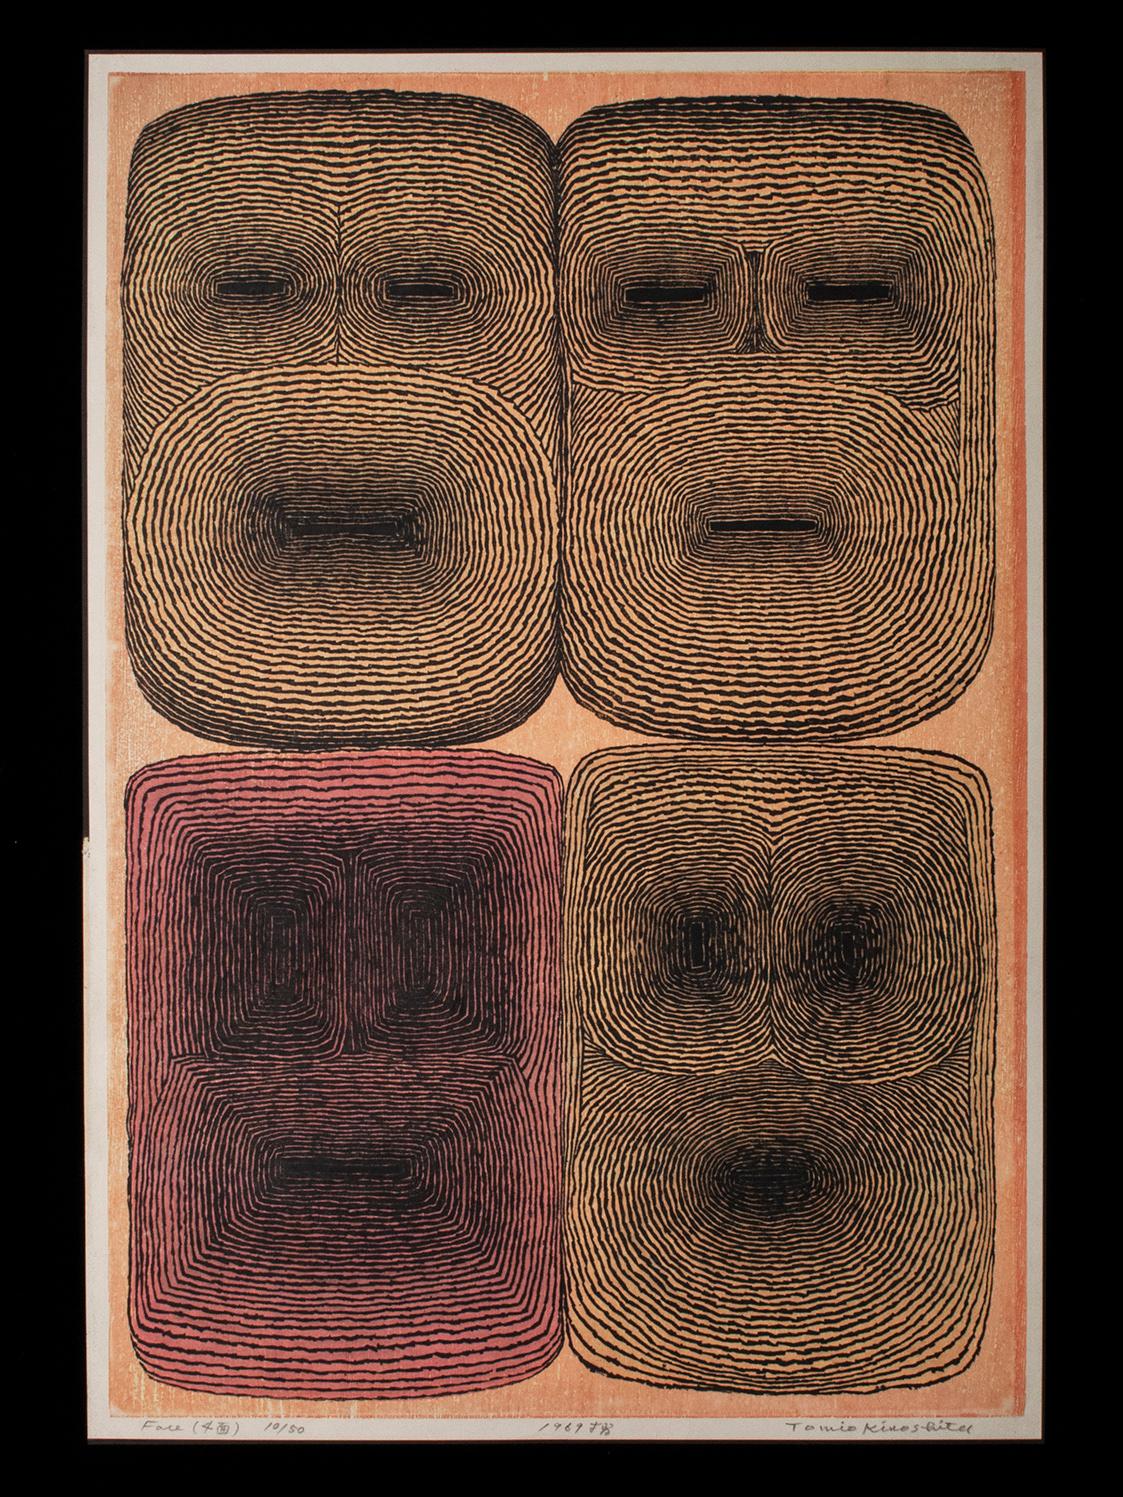 Gesichter (4 Gesichter), 1969
Tomio Kinoshita (1923-2014), Japan
Farbholzschnitt
Papier, Pigment, Sumi-Tusche
Bild: 27 hoch x 18,25 Zoll breit (68,5 x 46,4 cm)
Papierformat: 28 hoch x 19 Zoll breit (71 x 48 cm)
Auflage: 10/50

Dies ist ein